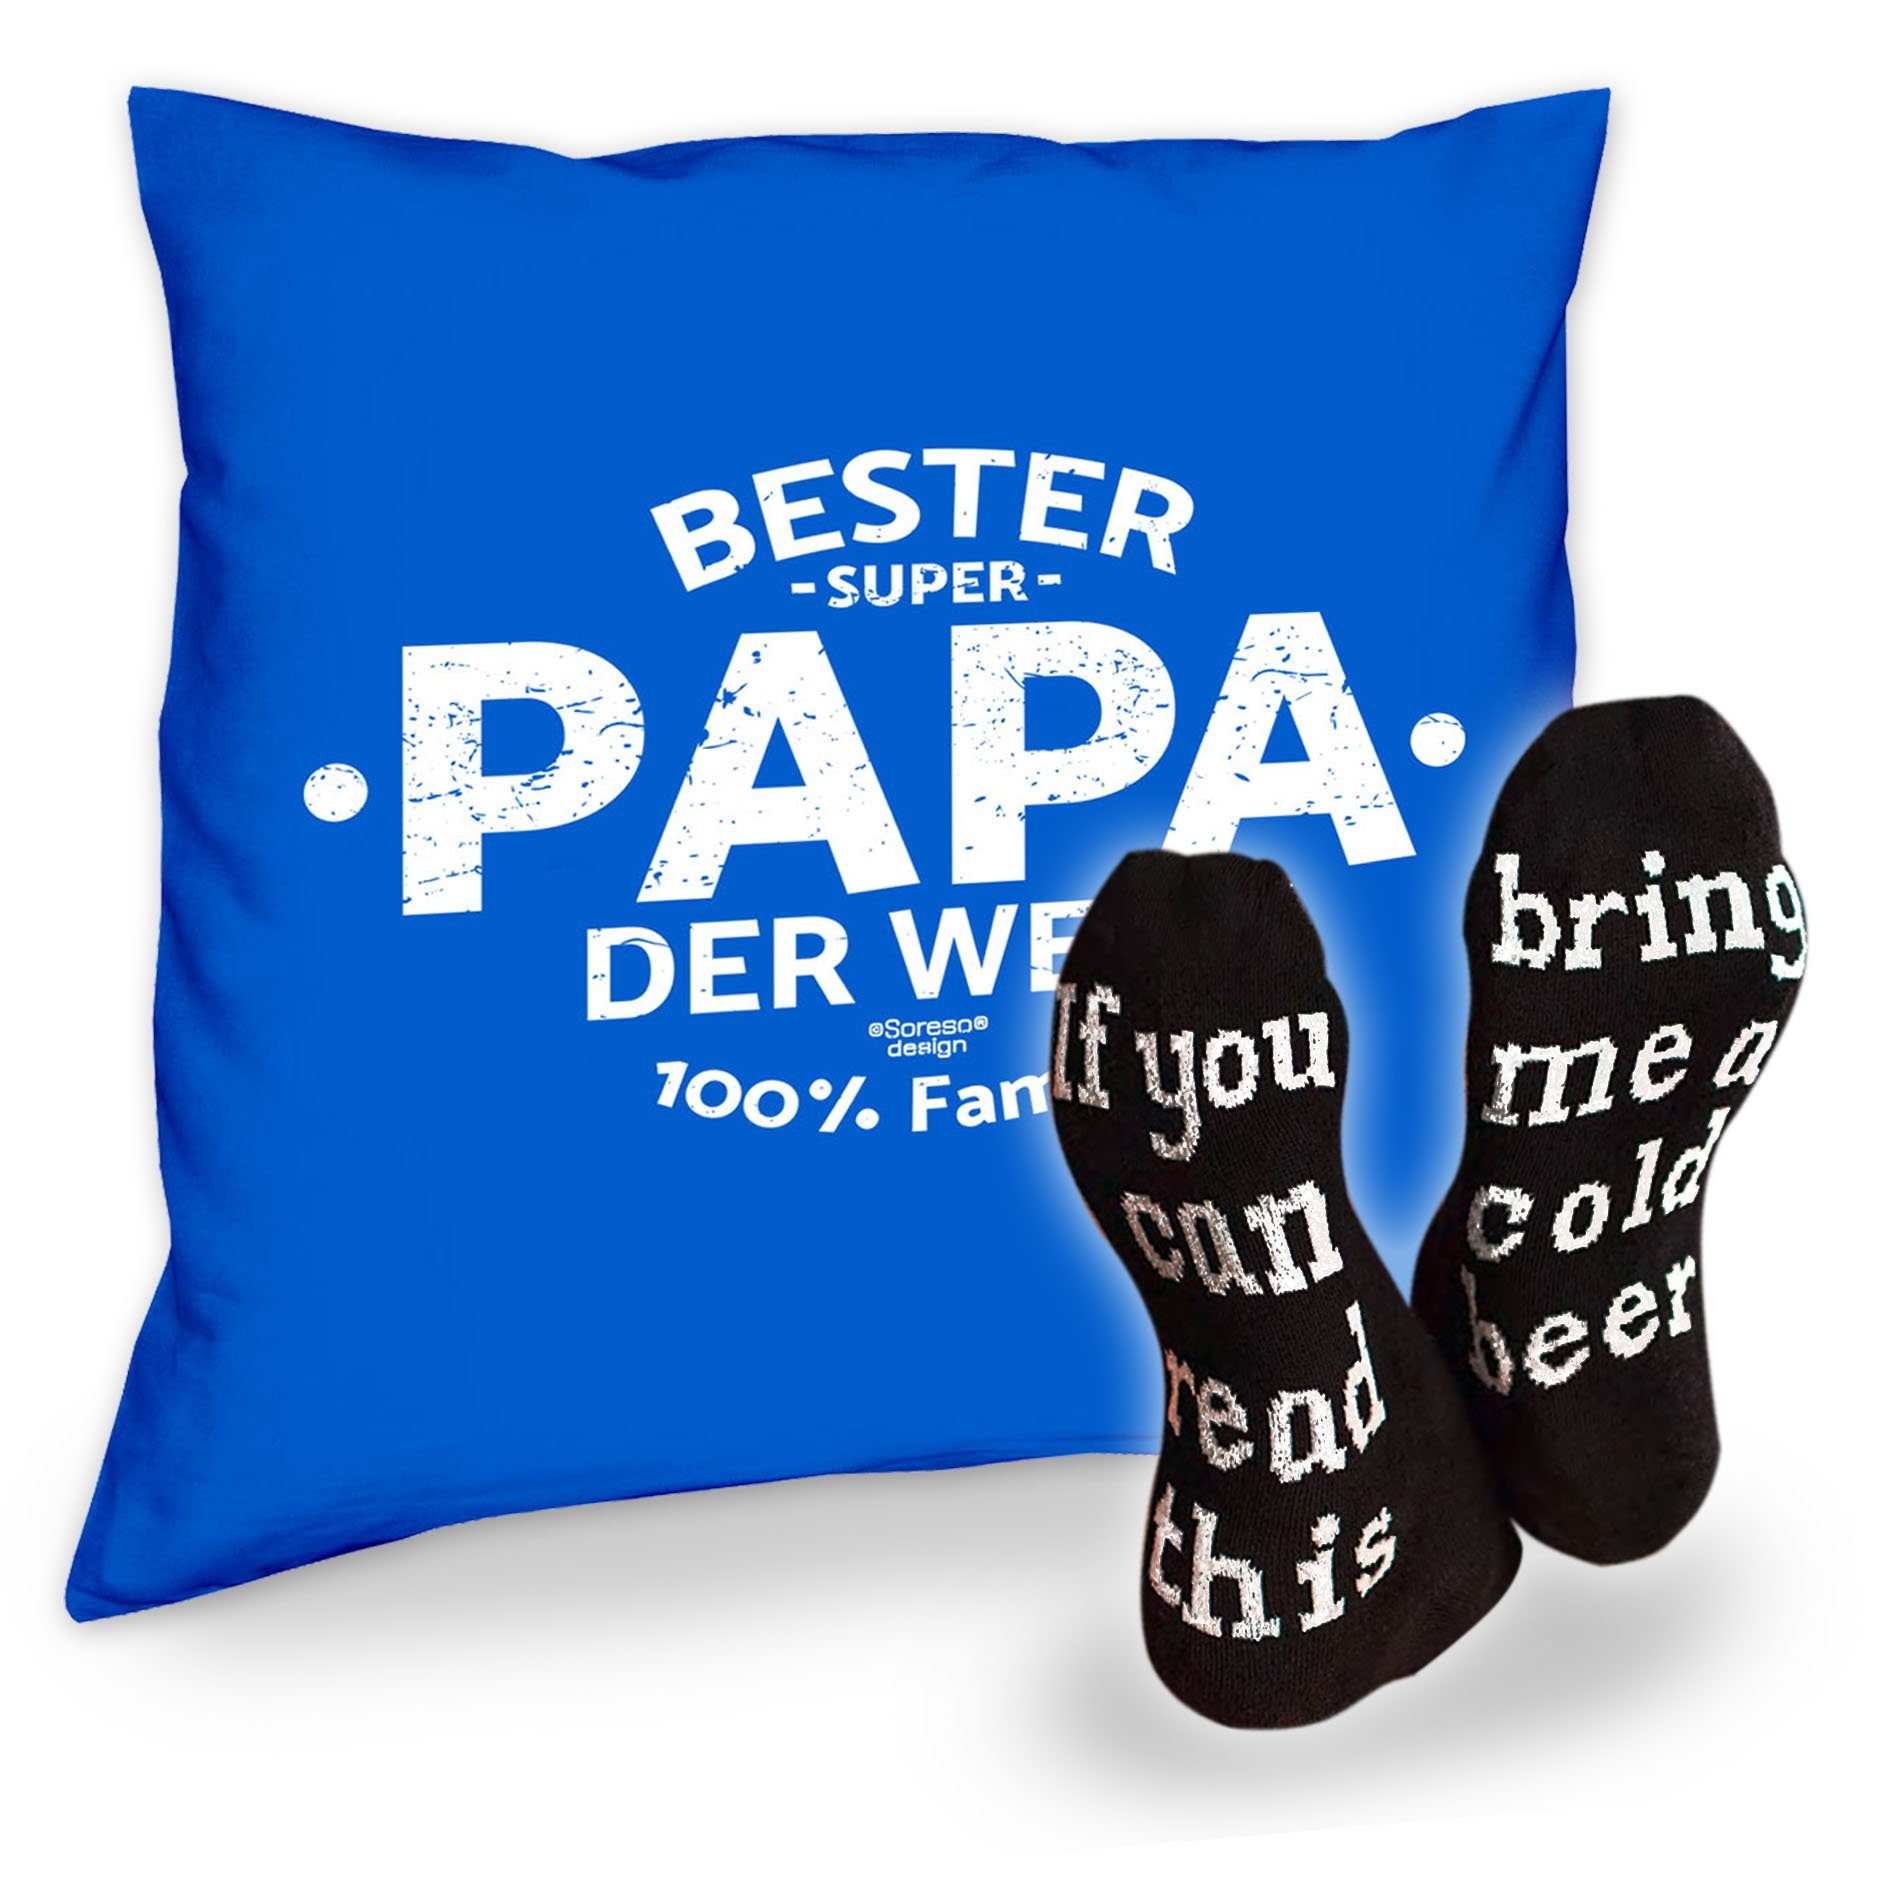 Papa Bier Dekokissen Bester der Papa Soreso® Welt Männer Socken und royal-blau Vatertagsgeschenk Spruch, Kissen mit